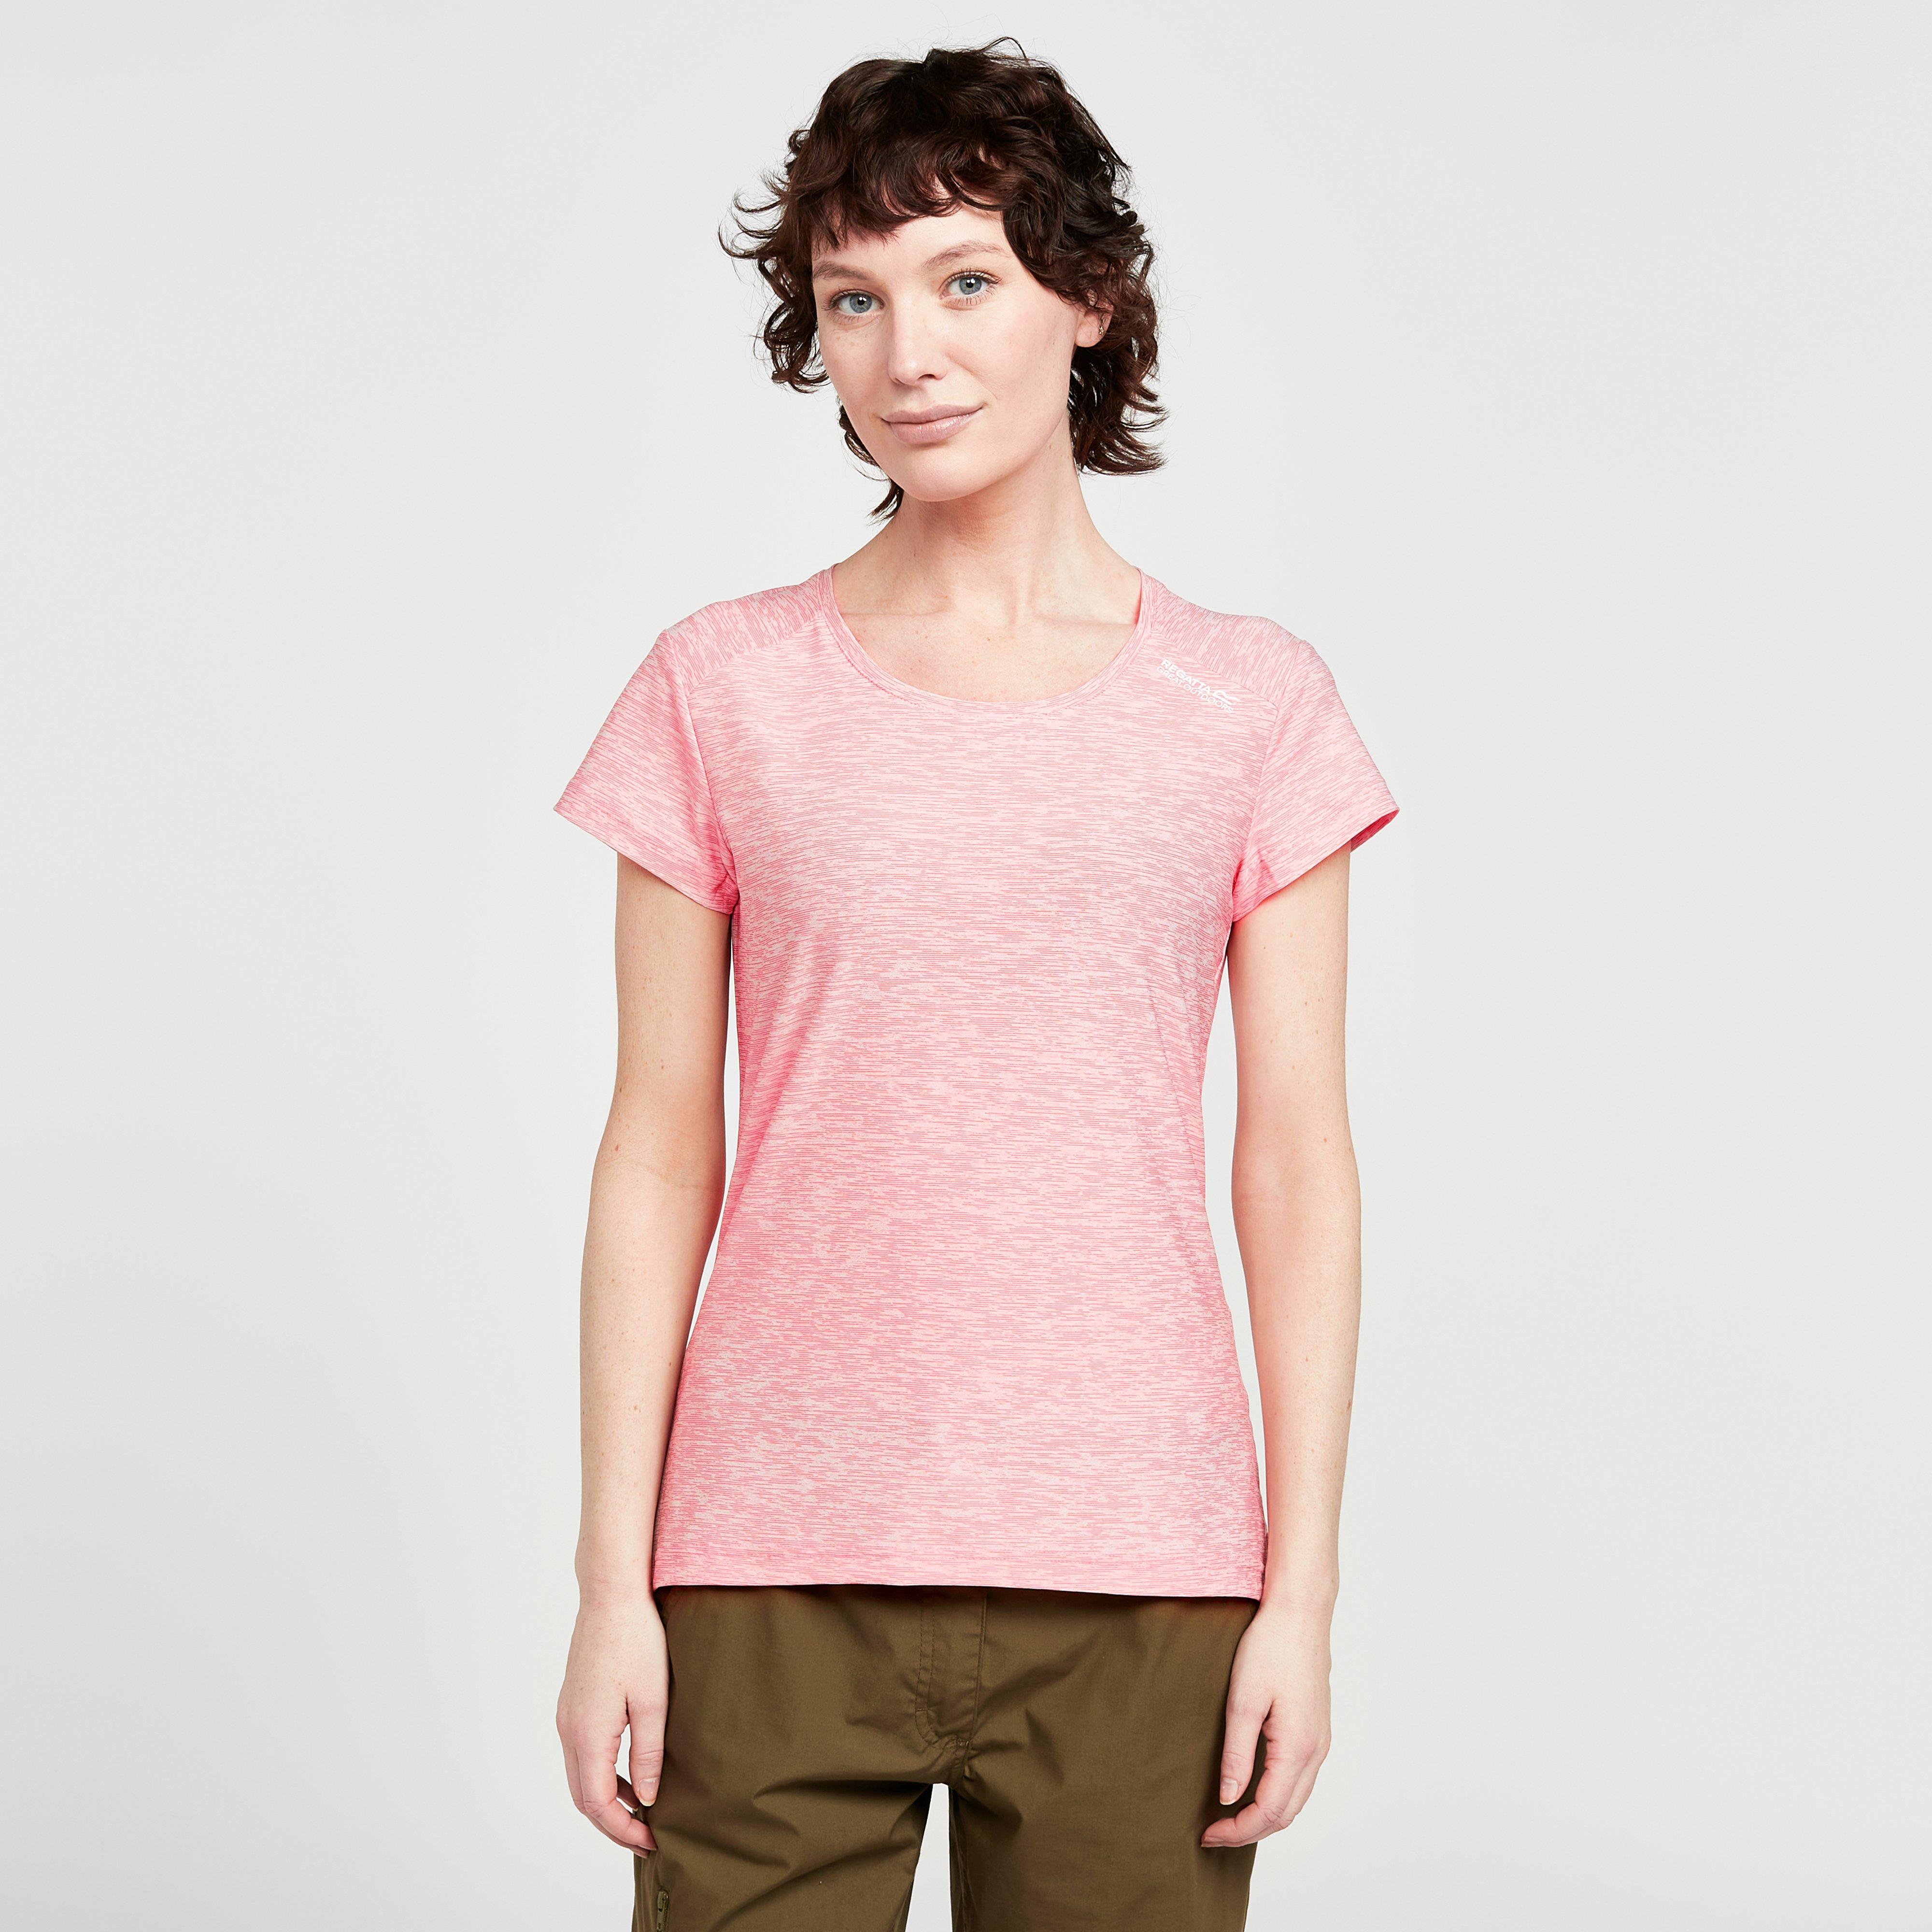 Image of Regatta Women's Limonite V T-Shirt - Pink/Pink, Pink/Pink